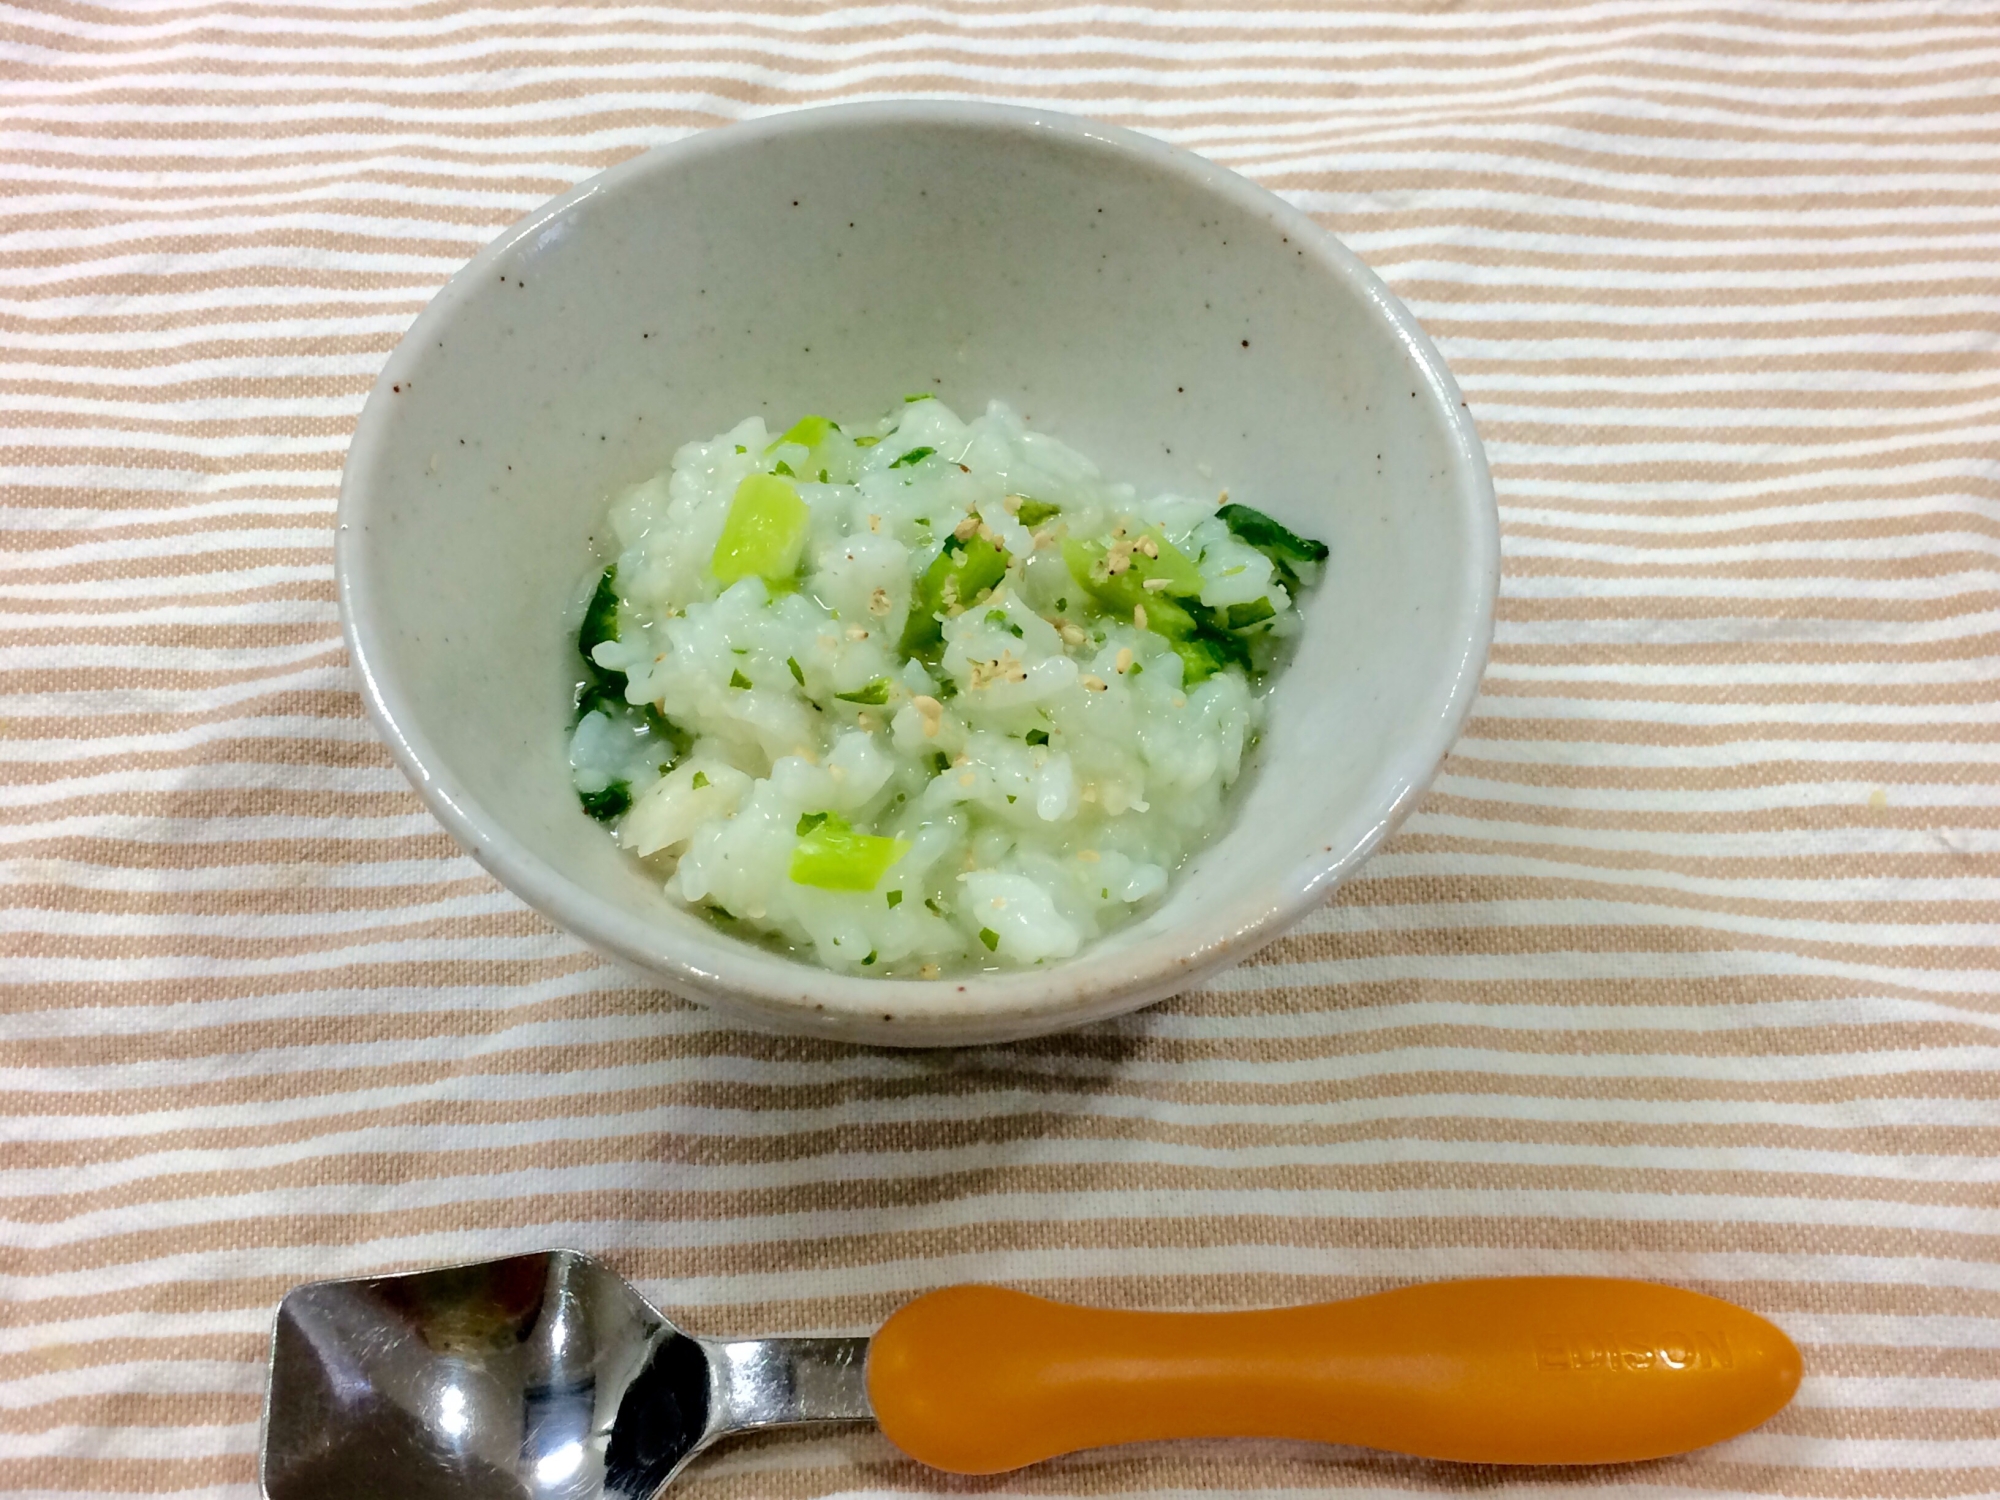 後期 風邪のときに タラとカブ葉のおかゆ レシピ 作り方 By Fujimon58 楽天レシピ